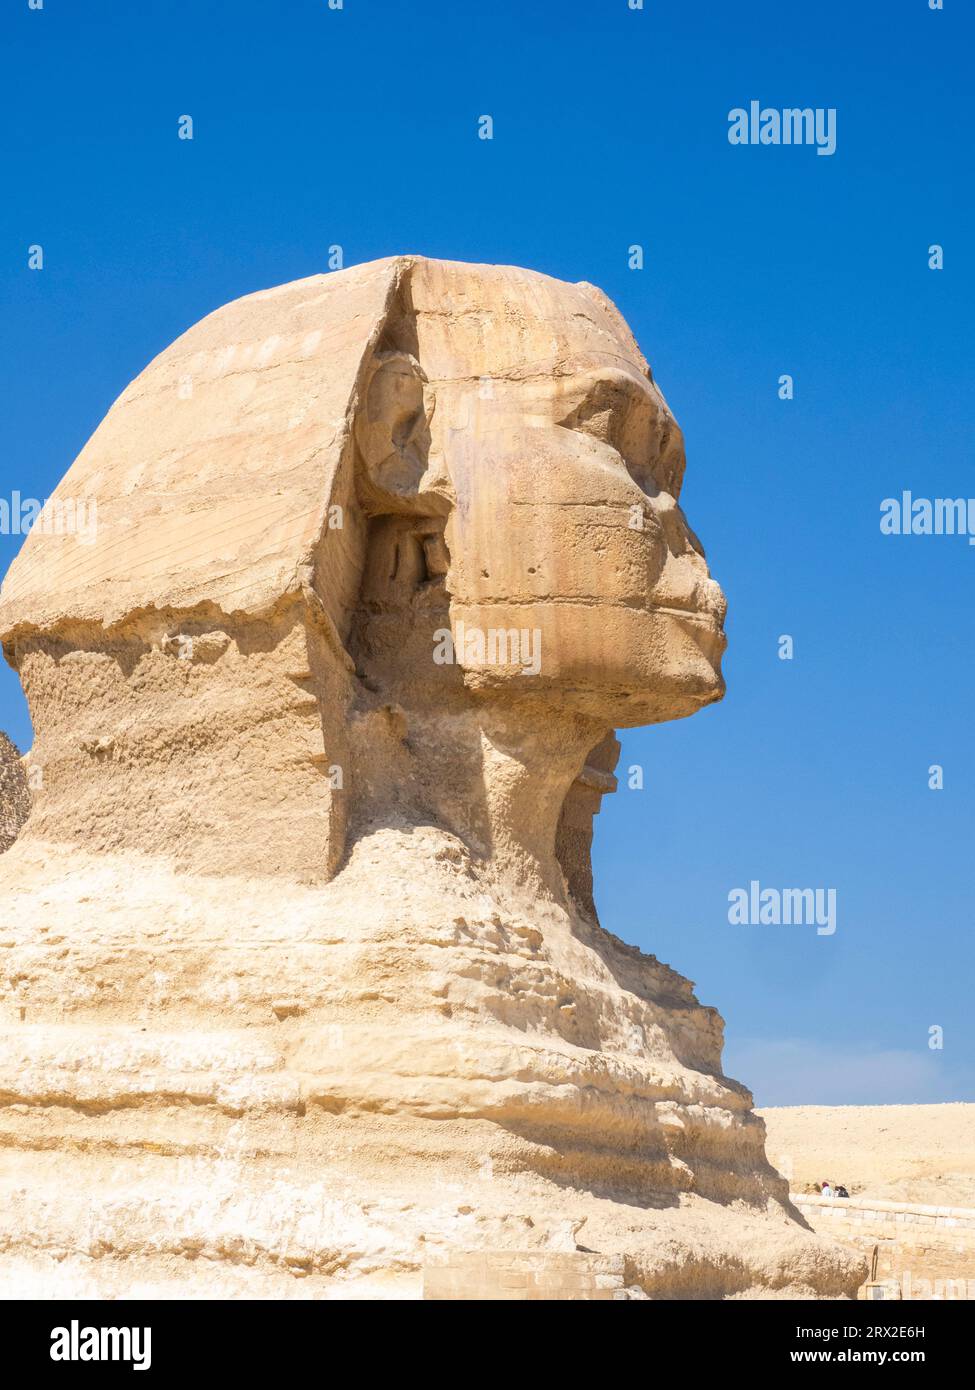 Die große Sphinx von Gizeh in der Nähe der Großen Pyramide von Gizeh, das älteste der sieben Weltwunder, in der Nähe von Kairo, Ägypten, Afrika Stockfoto